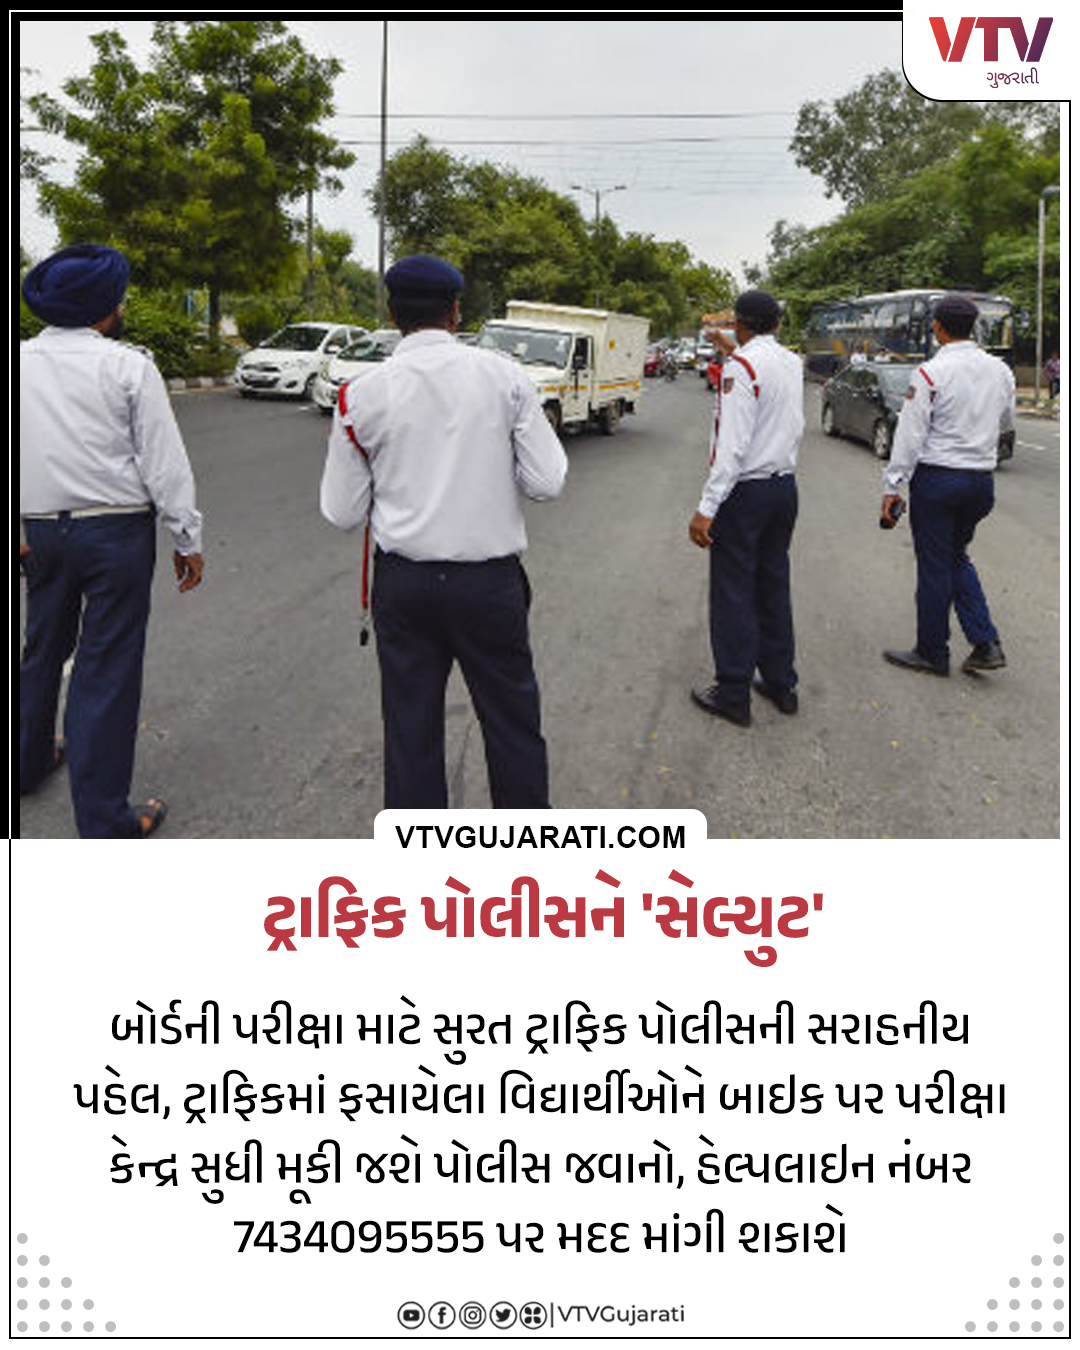 VTV Gujarati News and Beyond on Twitter: "સુરતમાં અનેક વિસ્તારોમાં મેટ્રોની  કામગીરીના કારણે ટ્રાફિક સર્જવવાની શક્યતા છે ત્યારે બોર્ડની પરીક્ષા દરમિયા  અડધા ...